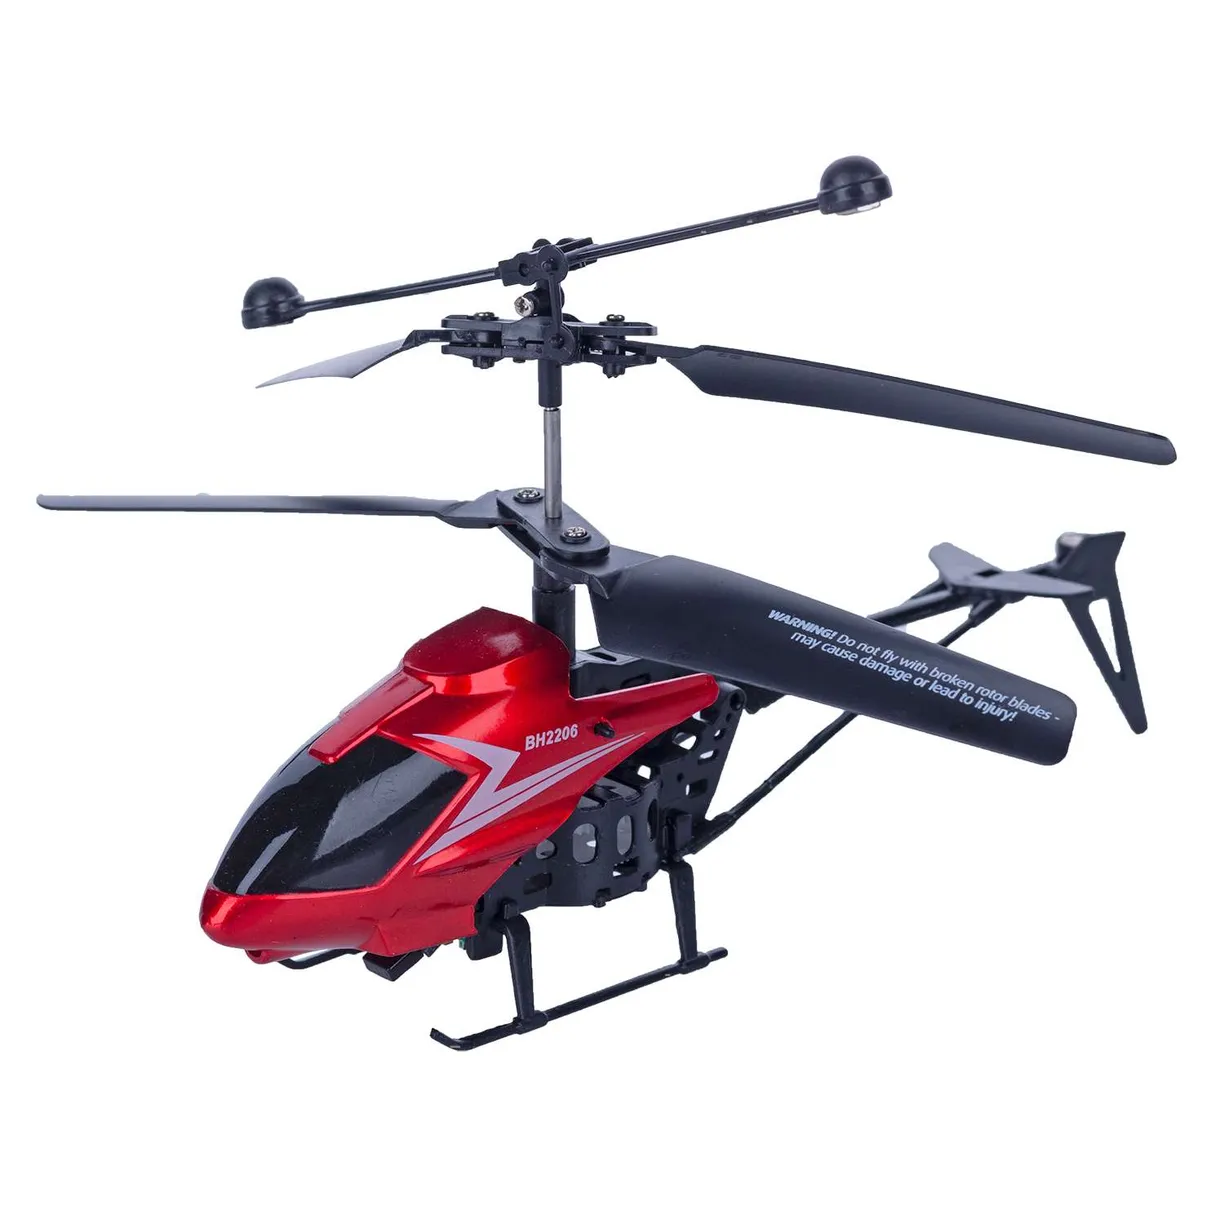 Радиоуправляемые вертолеты - купить в интернет-магазине Игрушек на пульте управления